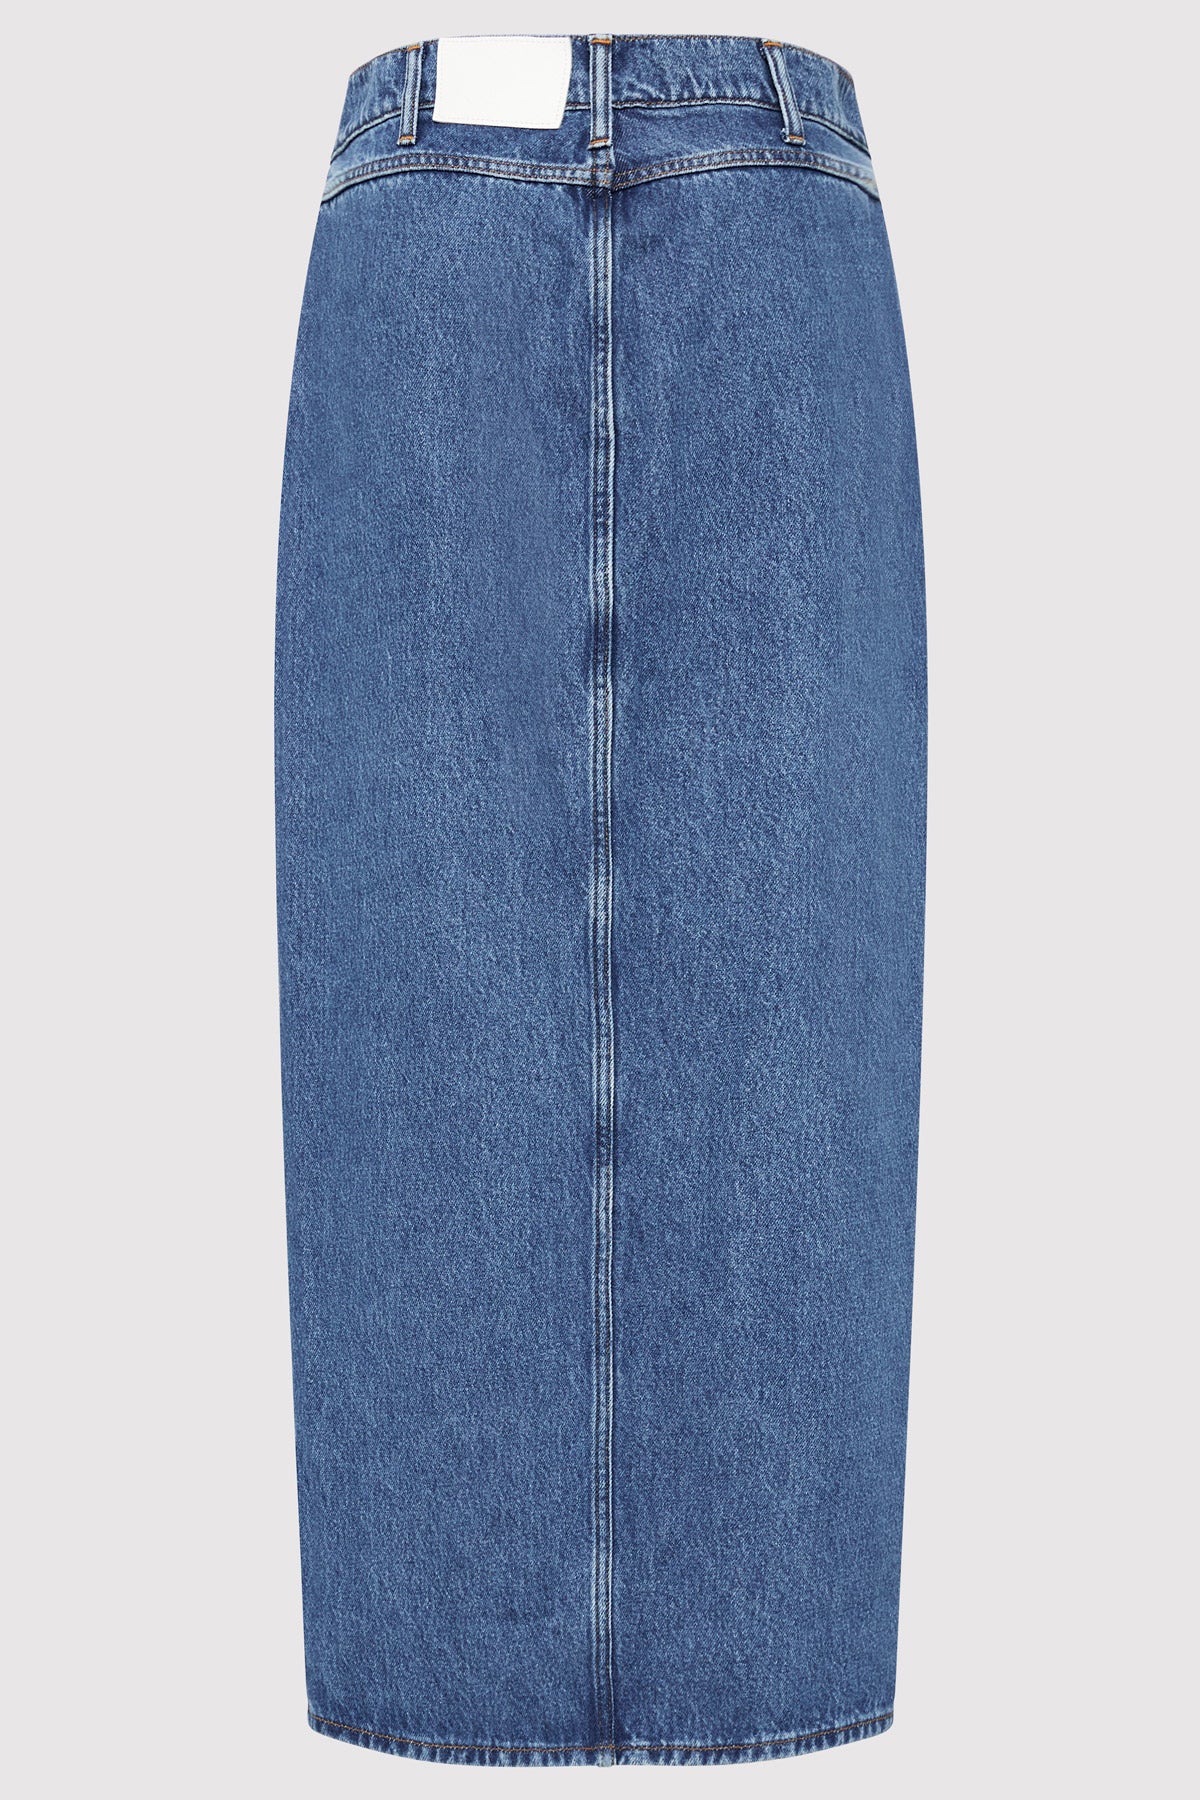 Denim Maxi Skirt - Denim Blue